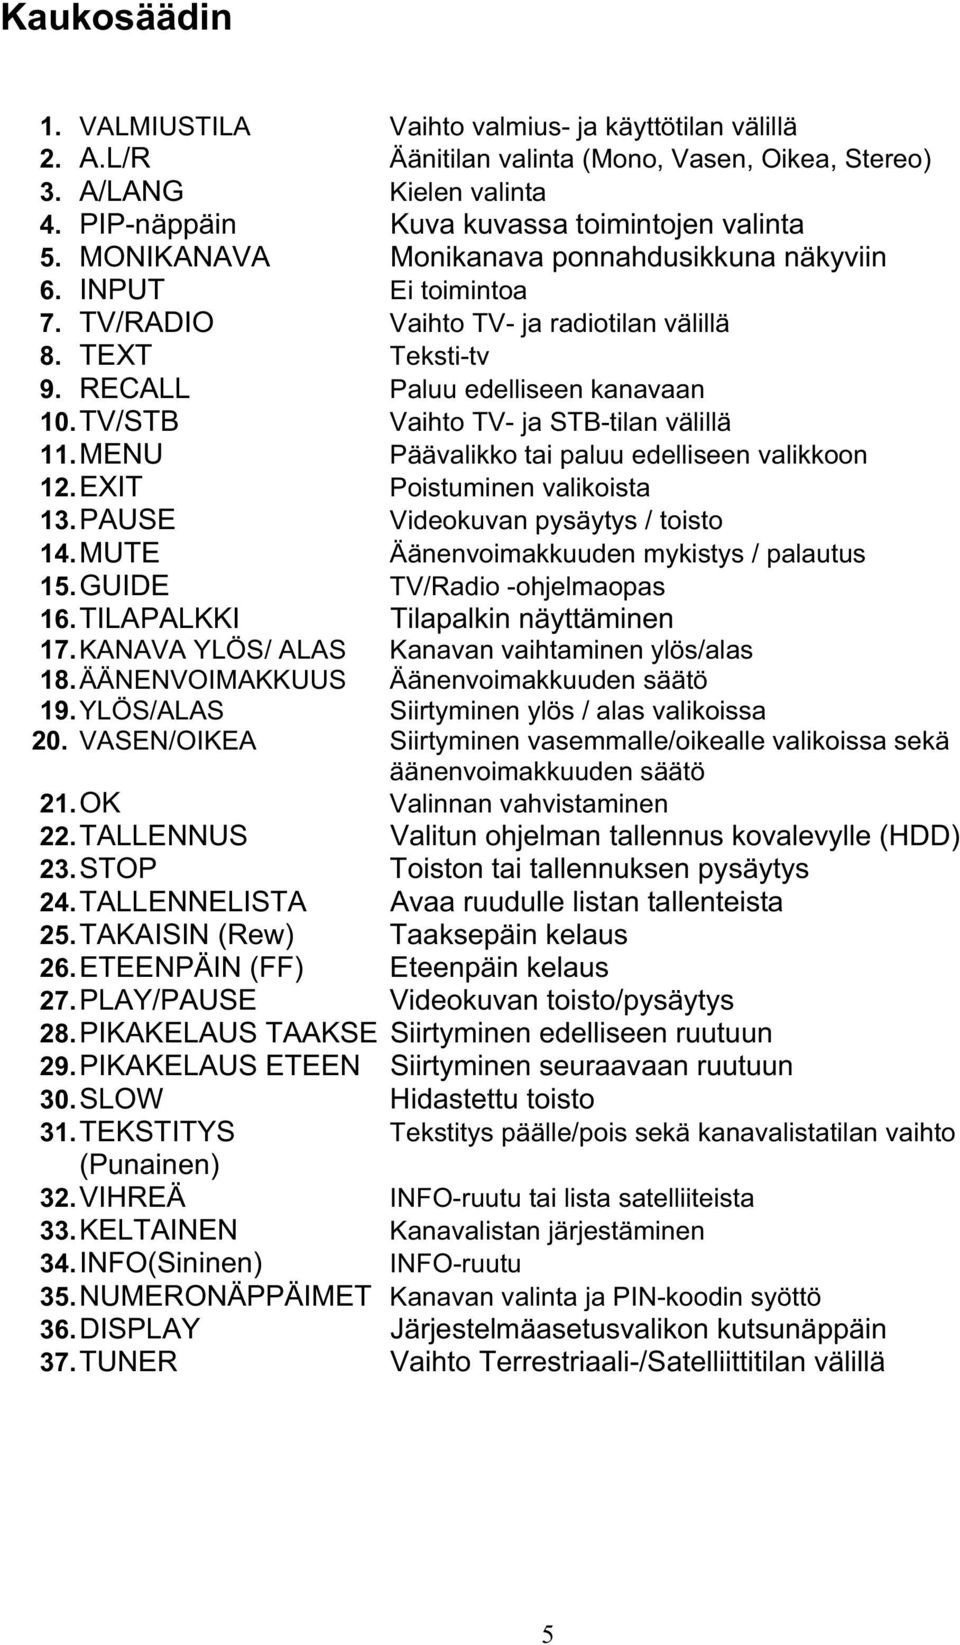 TV/STB Vaihto TV- ja STB-tilan välillä 11. MENU Päävalikko tai paluu edelliseen valikkoon 12. EXIT Poistuminen valikoista 13.PAUSE Videokuvan pysäytys / toisto 14.